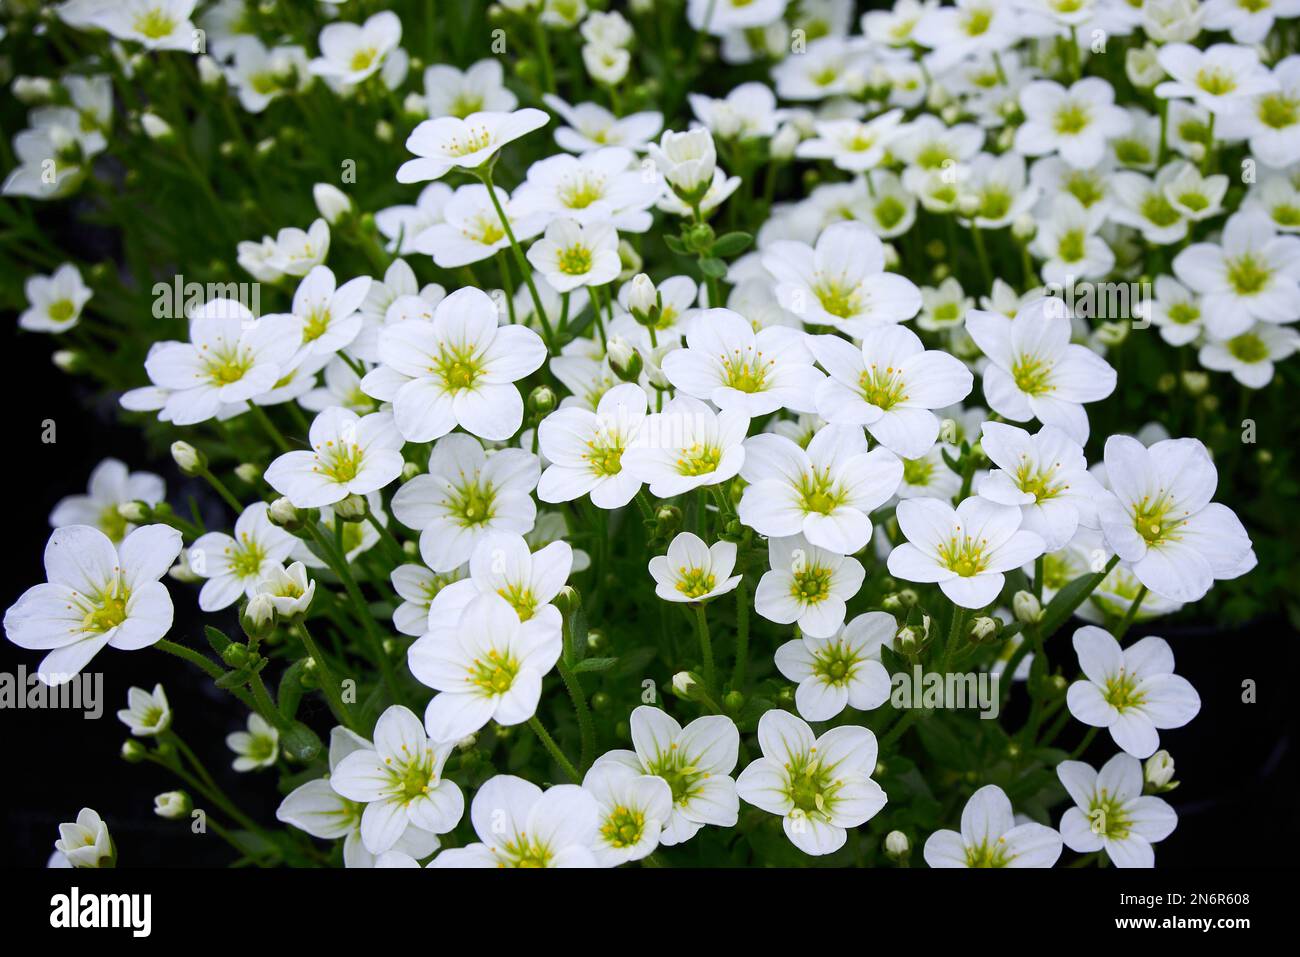 Saxifraga small white flowers, Saxifraga arendsii Adebar Saxifragaceae family perennial flowering plant Stock Photo